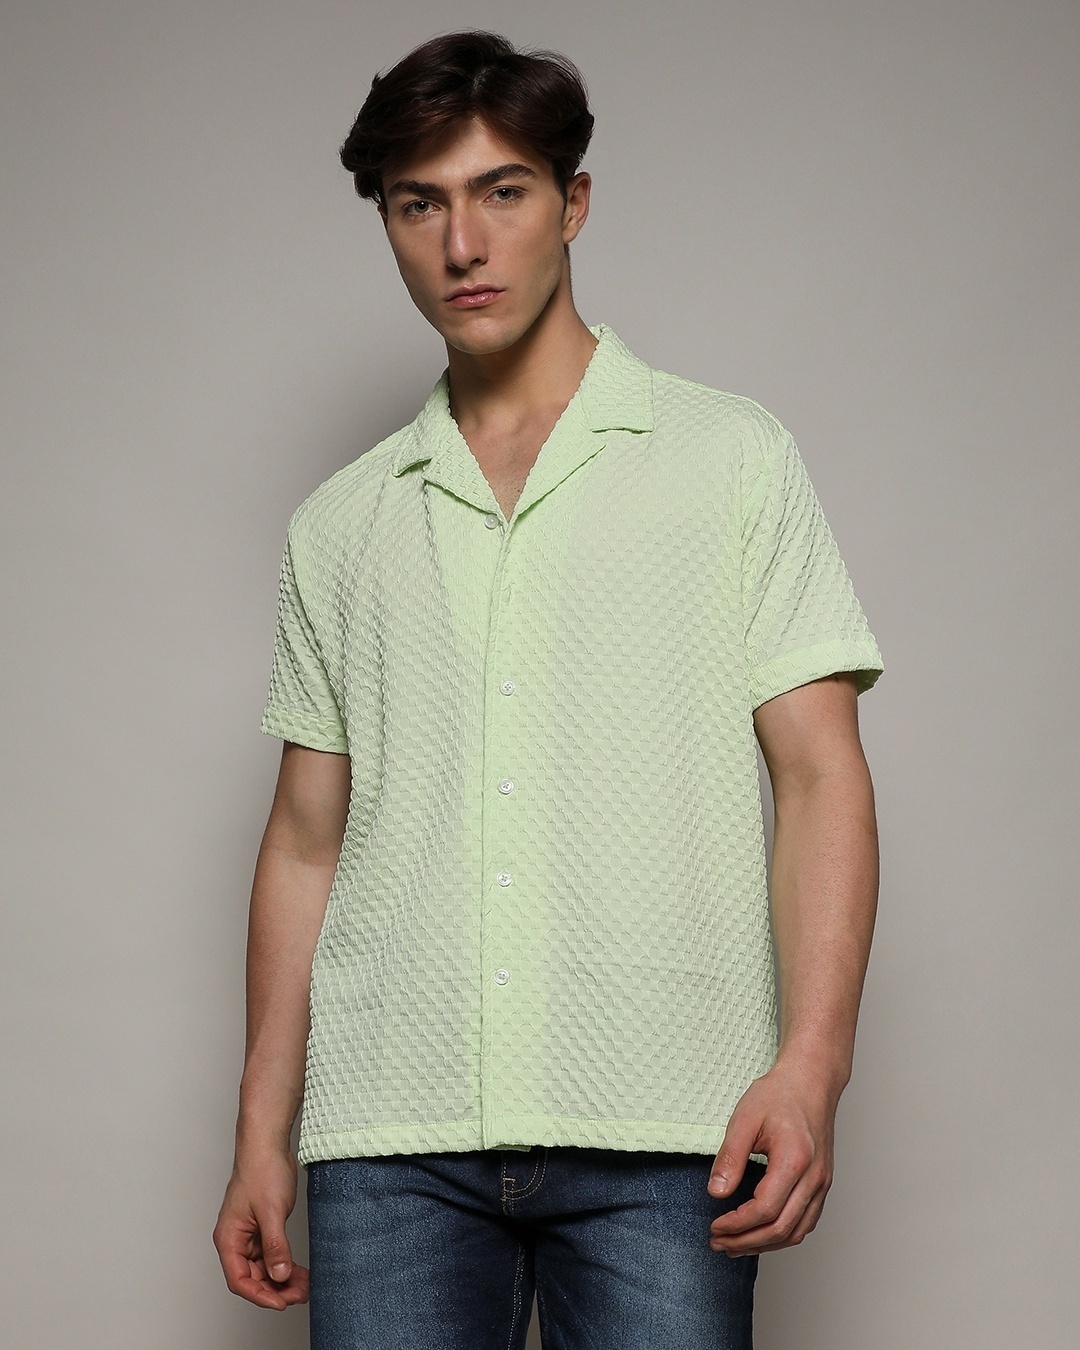 Men's Green Relaxed Fit Textured Shirt